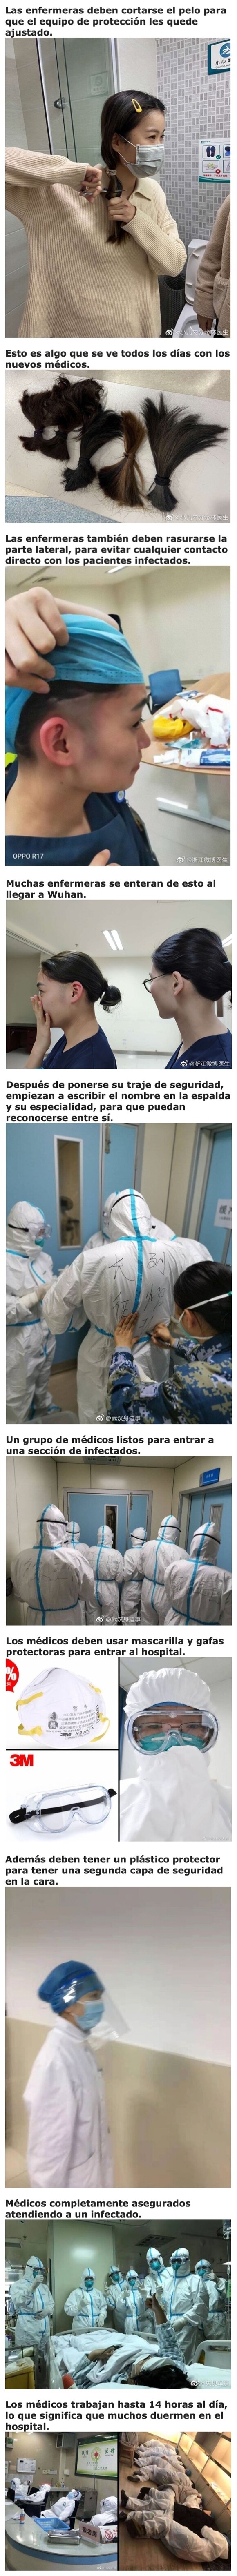 2683 - Fotos que muestran cómo trabajan los médicos de Wuhan contra el Coronavirus